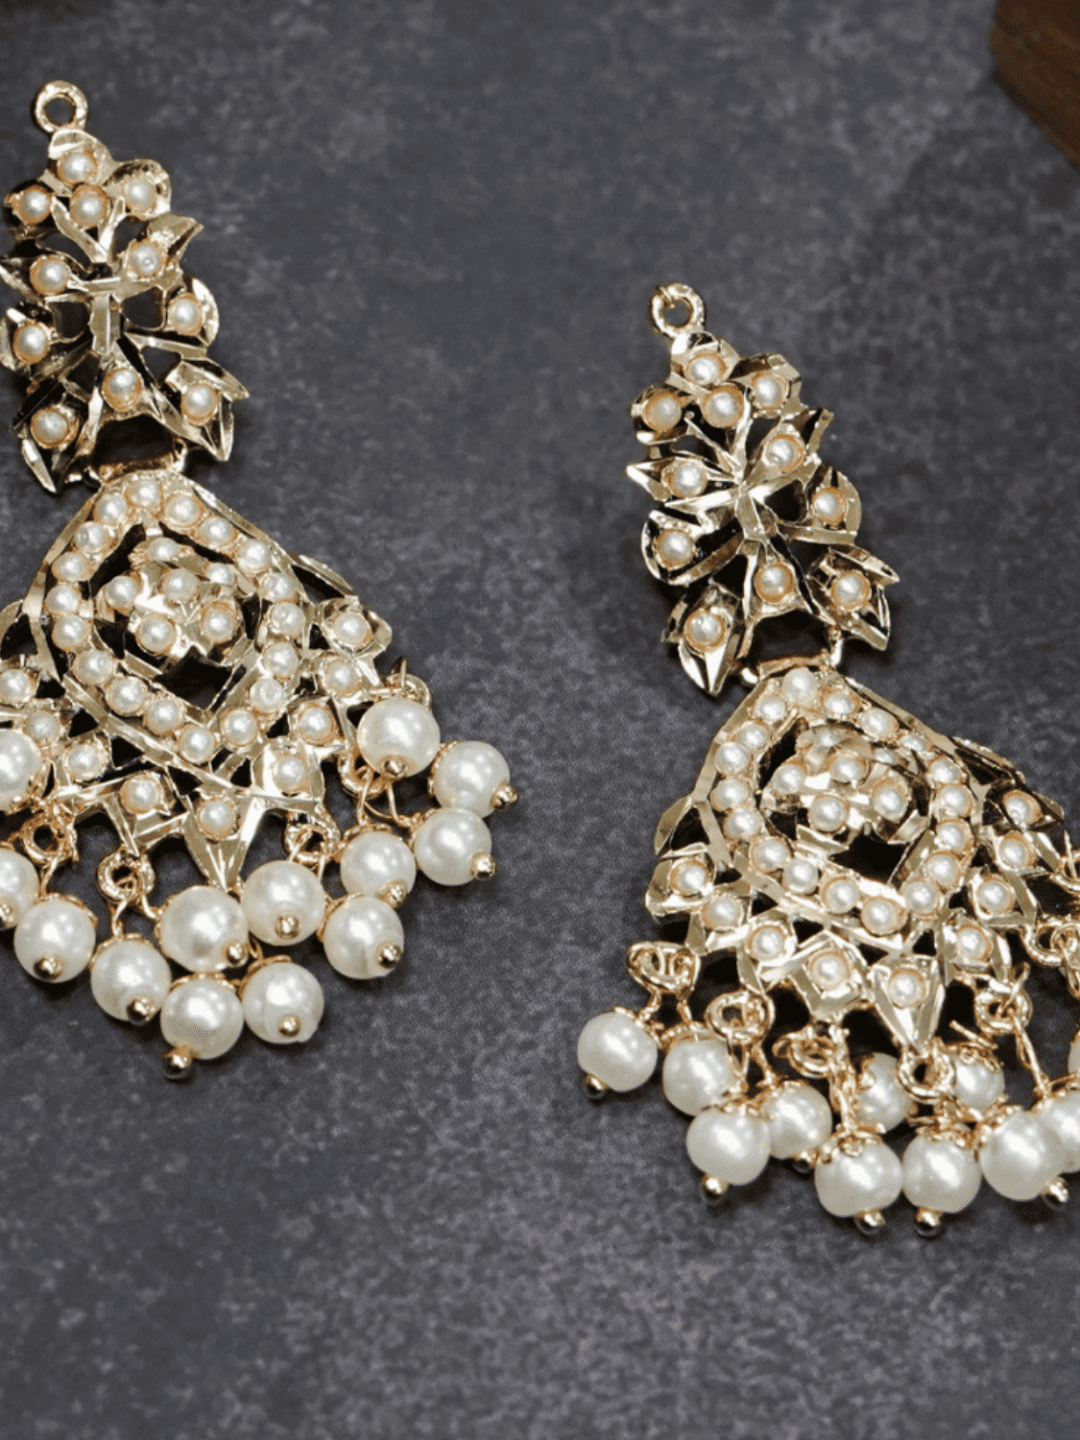 All white pearls jadau chaandbali earrings.